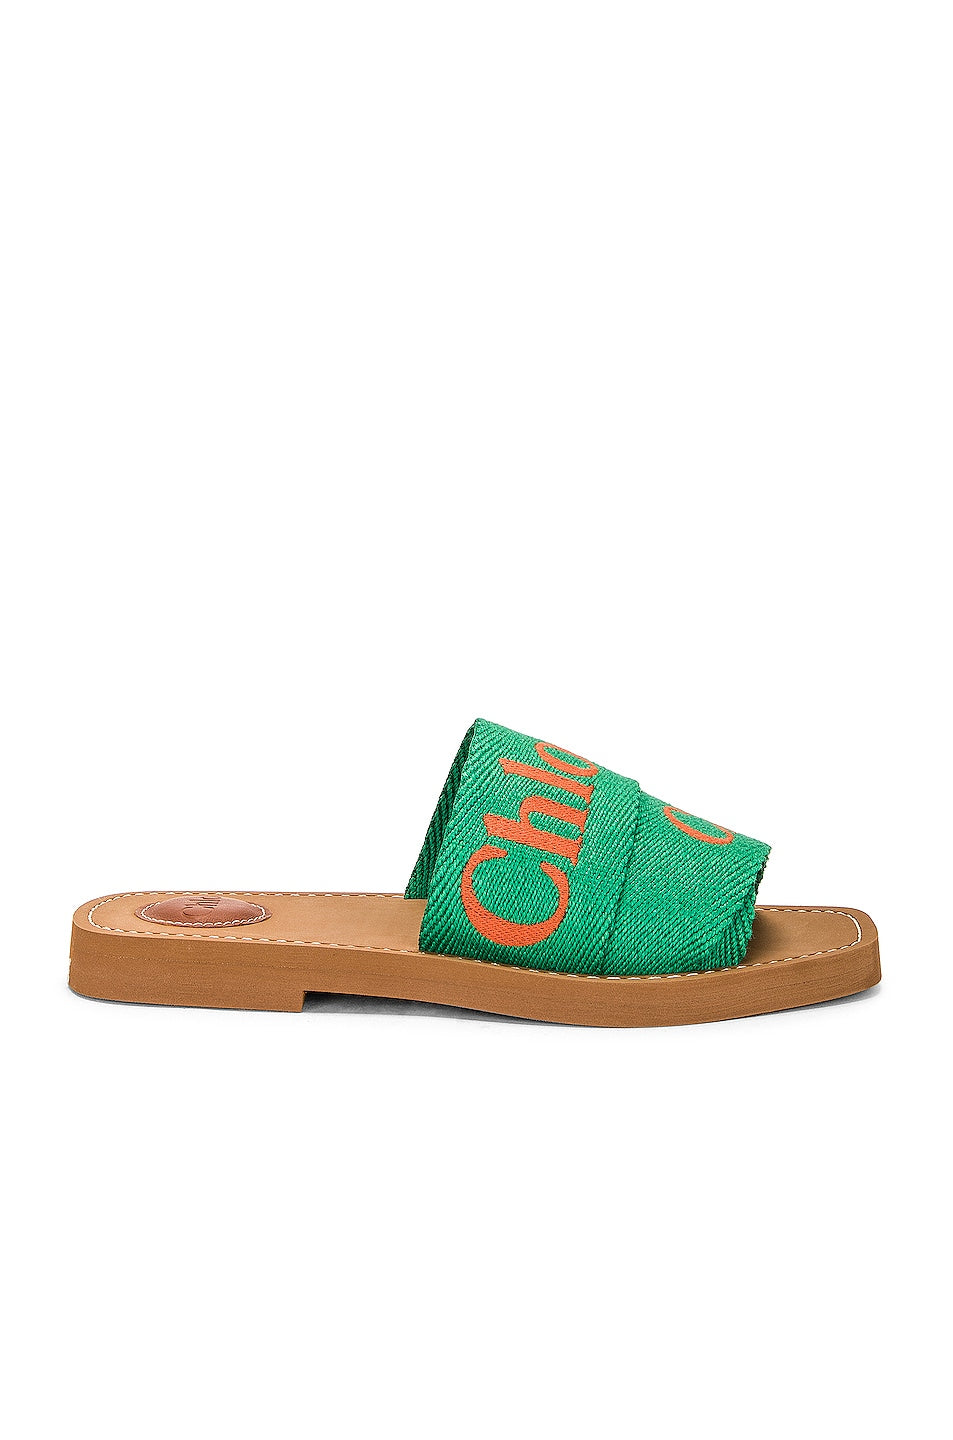 CHLOE Woody Sandal in Green & Orange